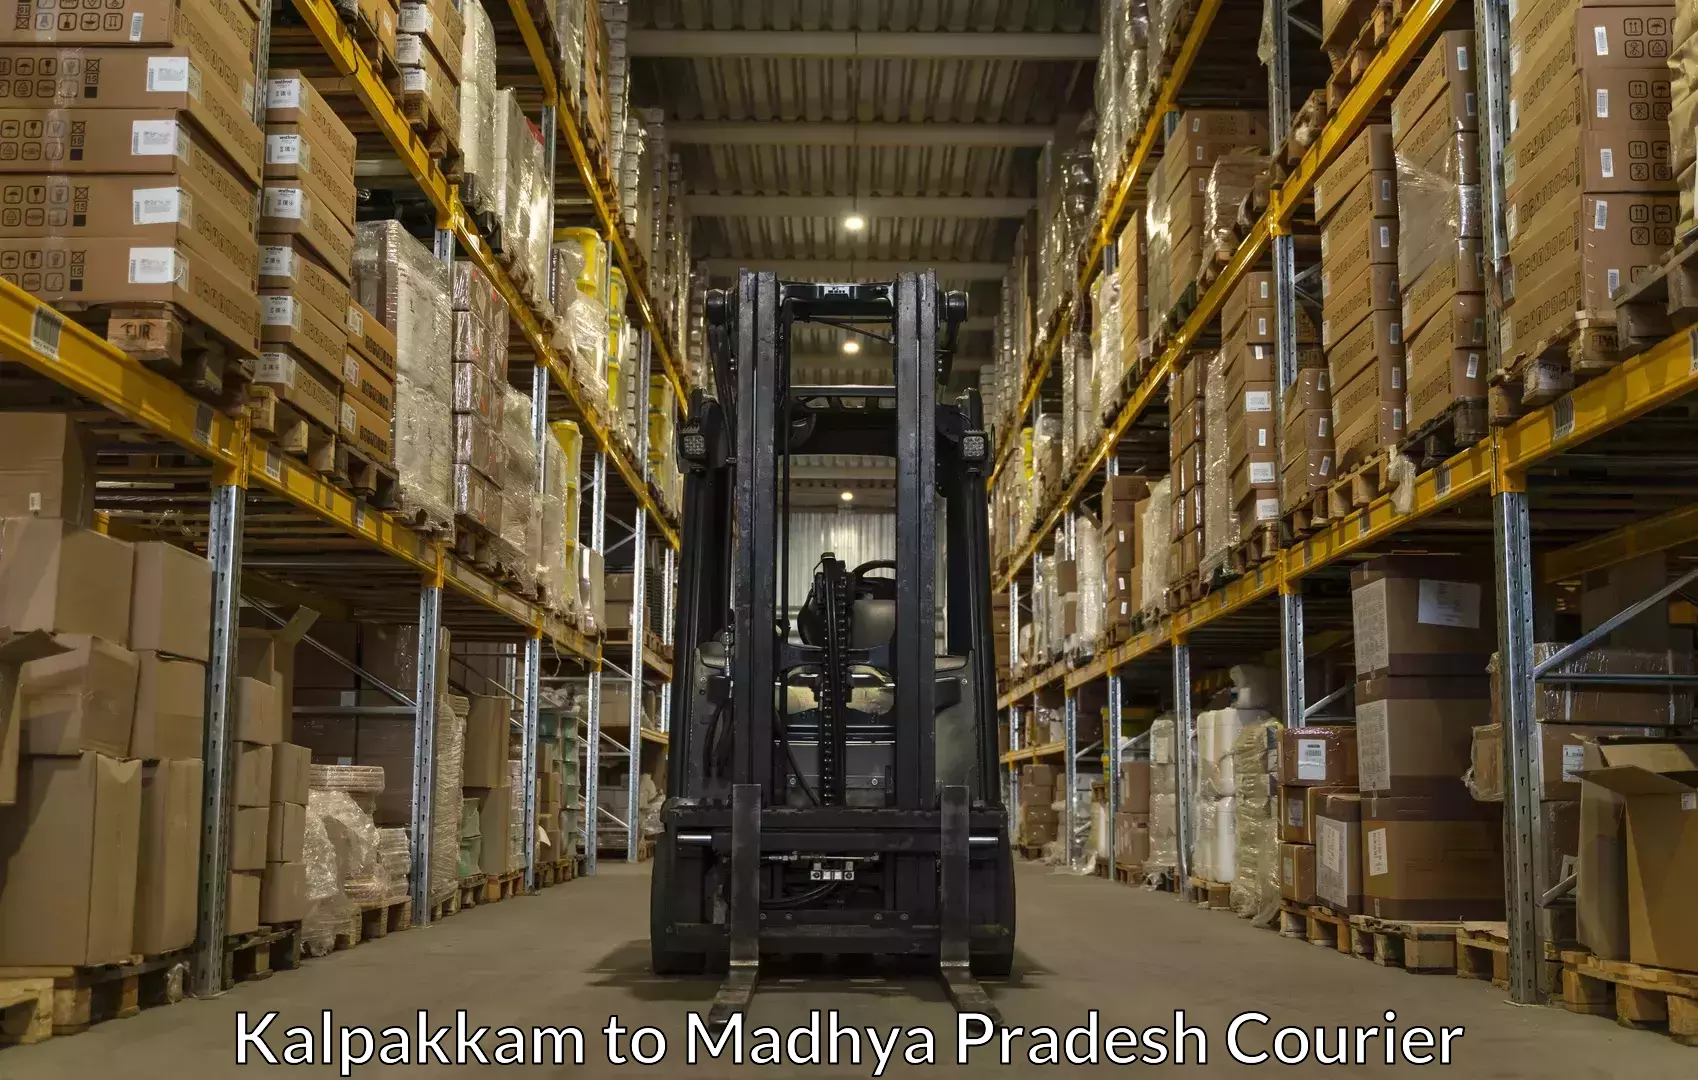 Luggage shipment specialists Kalpakkam to Datia